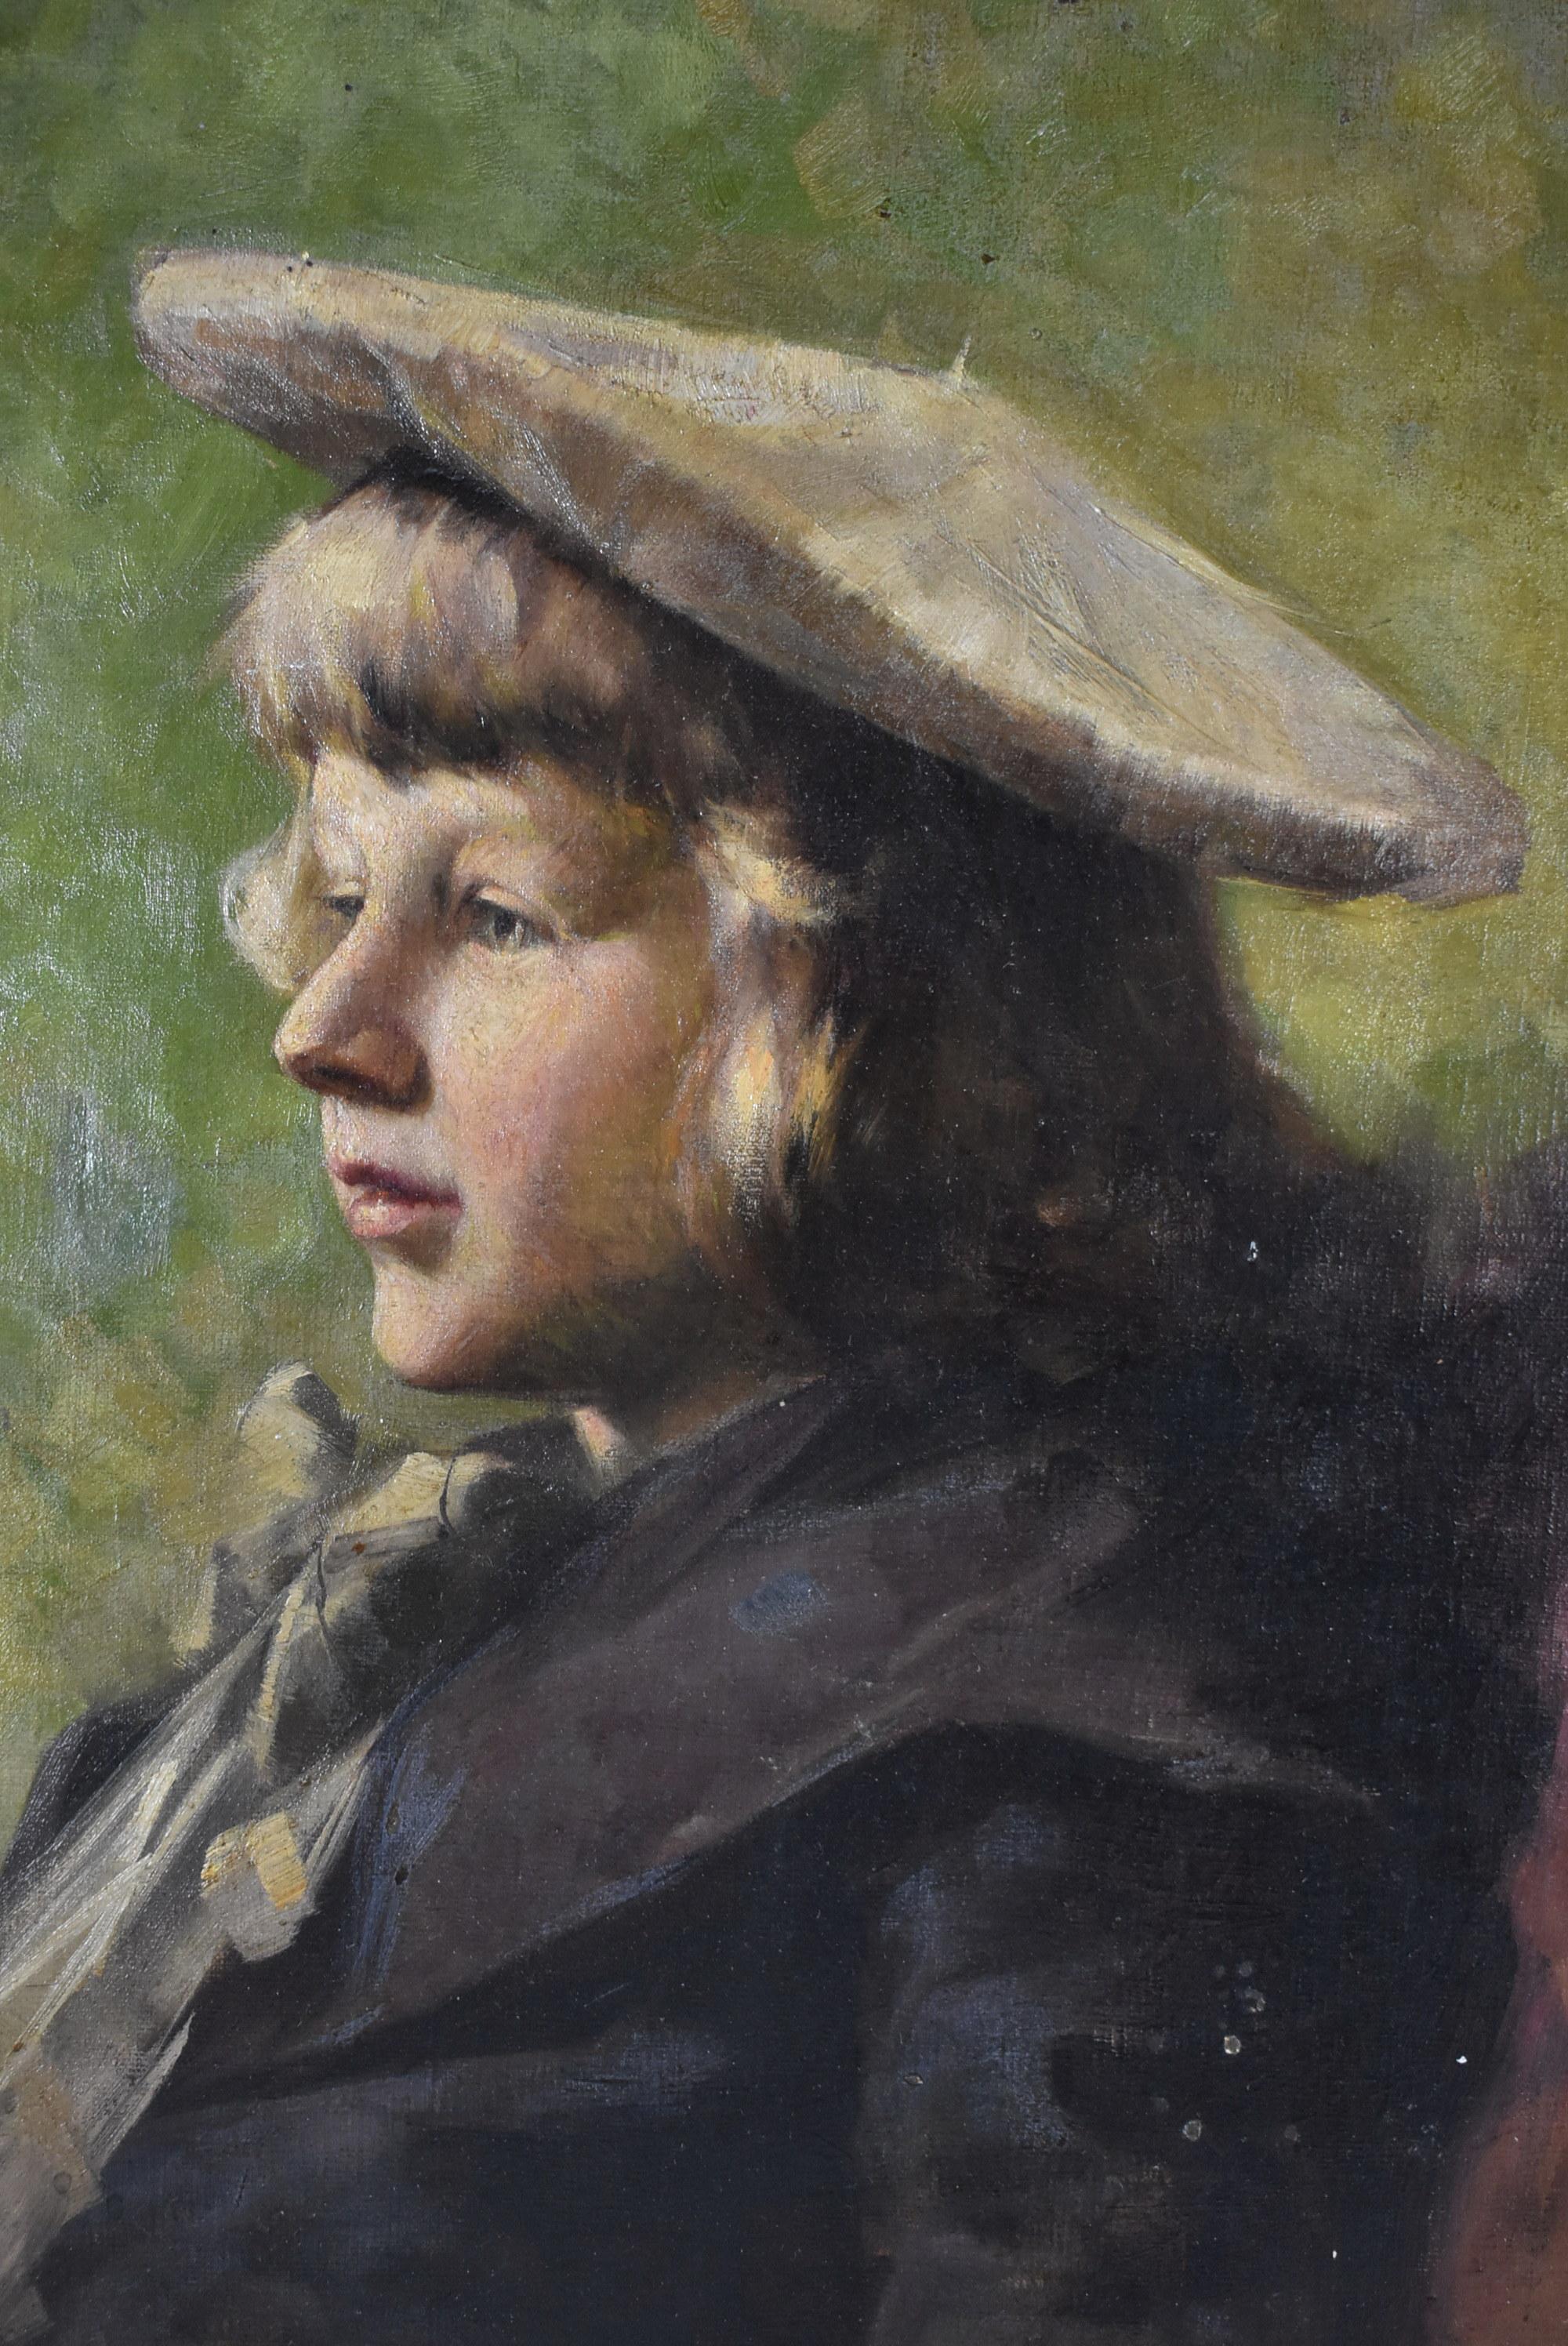 Huile sur toile d'un jeune homme par l'artiste ukrainien Iwan Tusz 1869-1941. A subi une petite réparation. Le cadre a des dégâts. La taille de l'image mesure 15,57